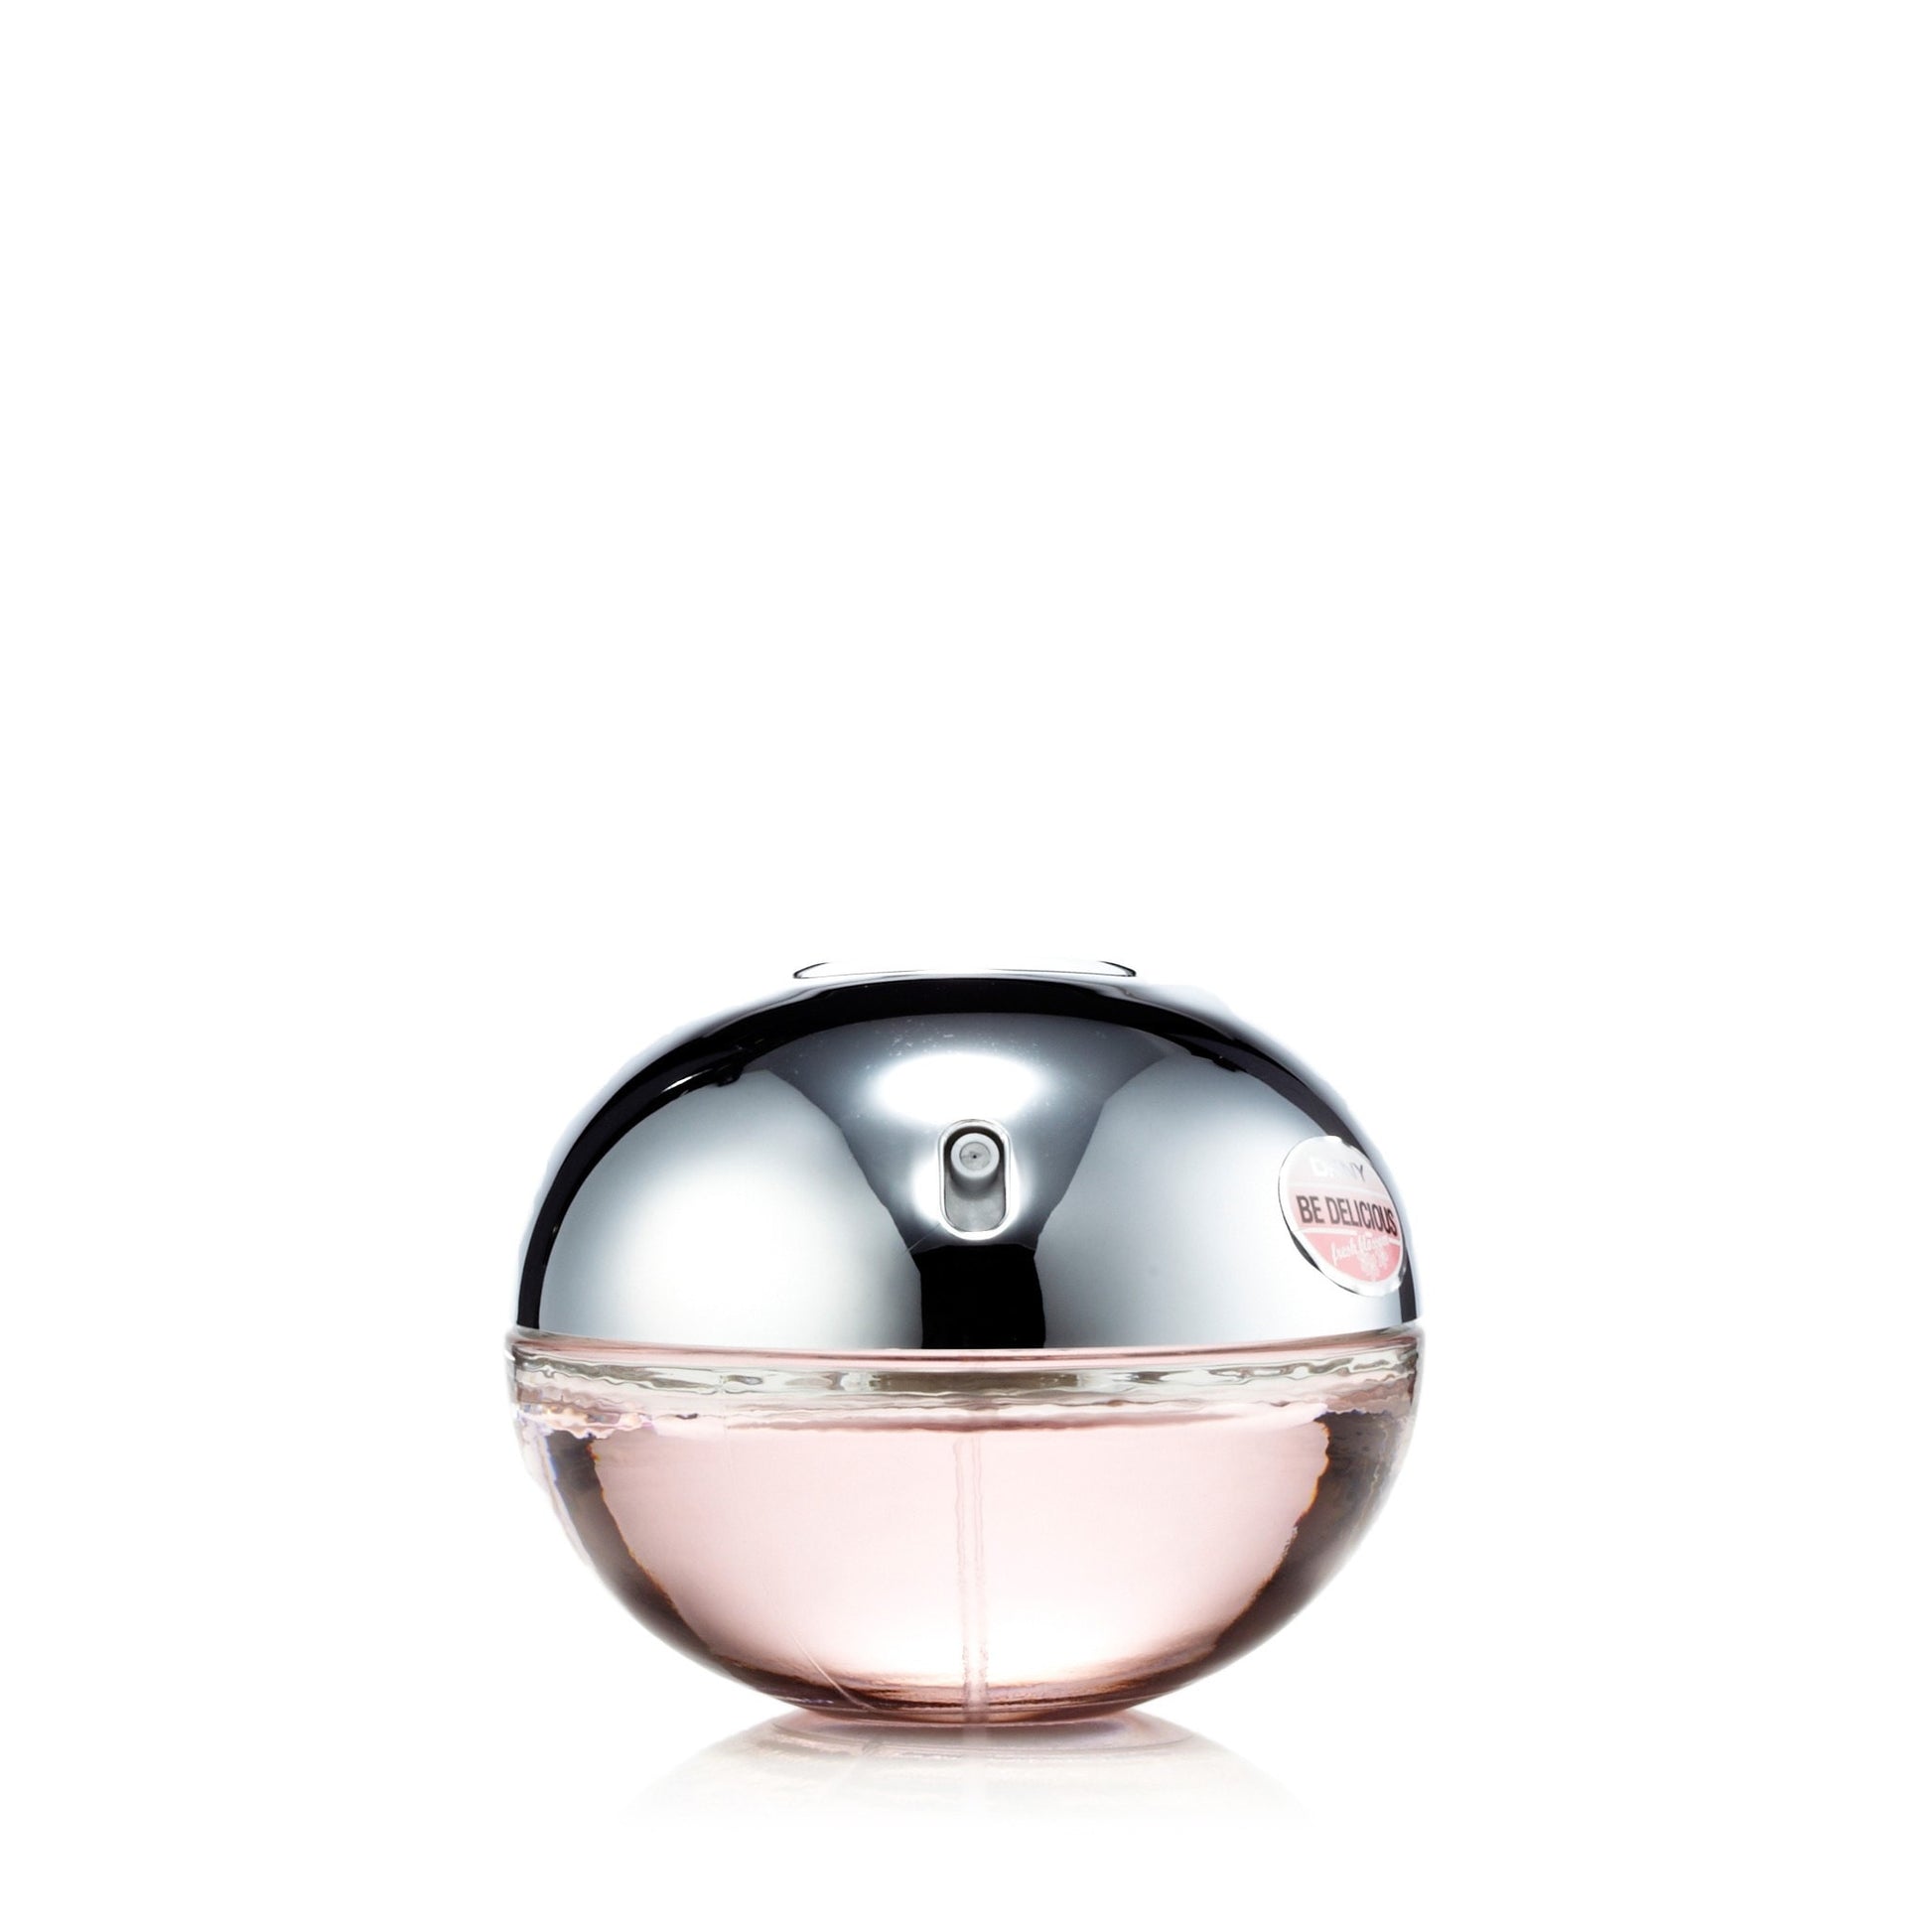 Be Delicious Fresh Blossom Eau de Parfum Spray for Women by Donna Karan 1.7 oz. Click to open in modal